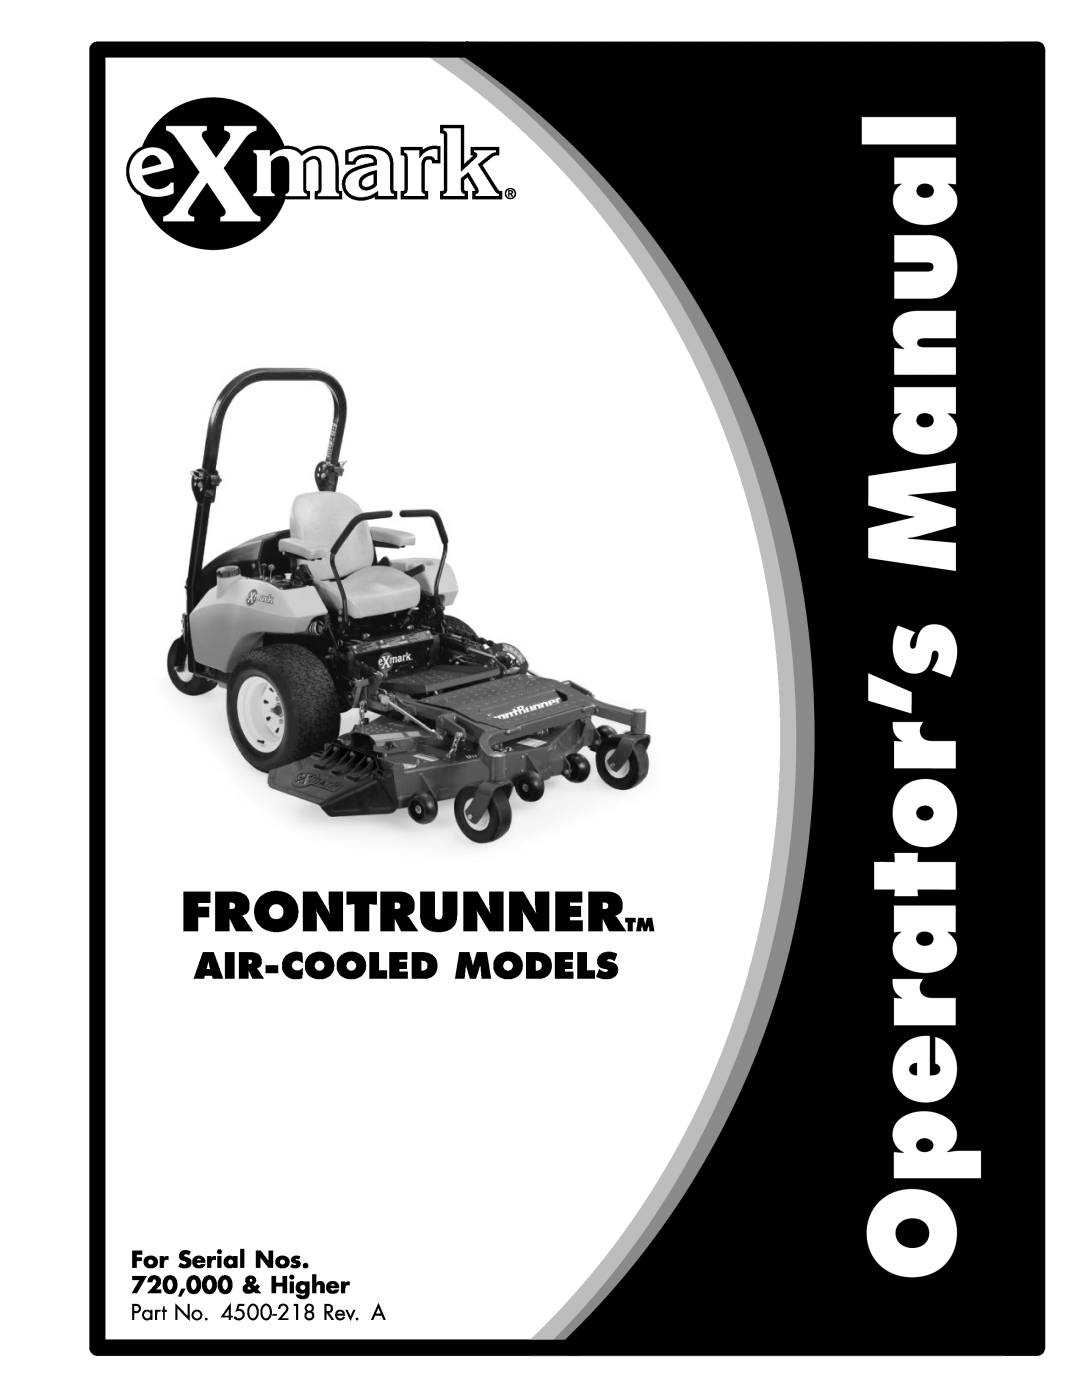 Exmark 720000 & Higher manual Frontrunnertm, Air-Cooledmodels, For Serial Nos 720,000 & Higher 